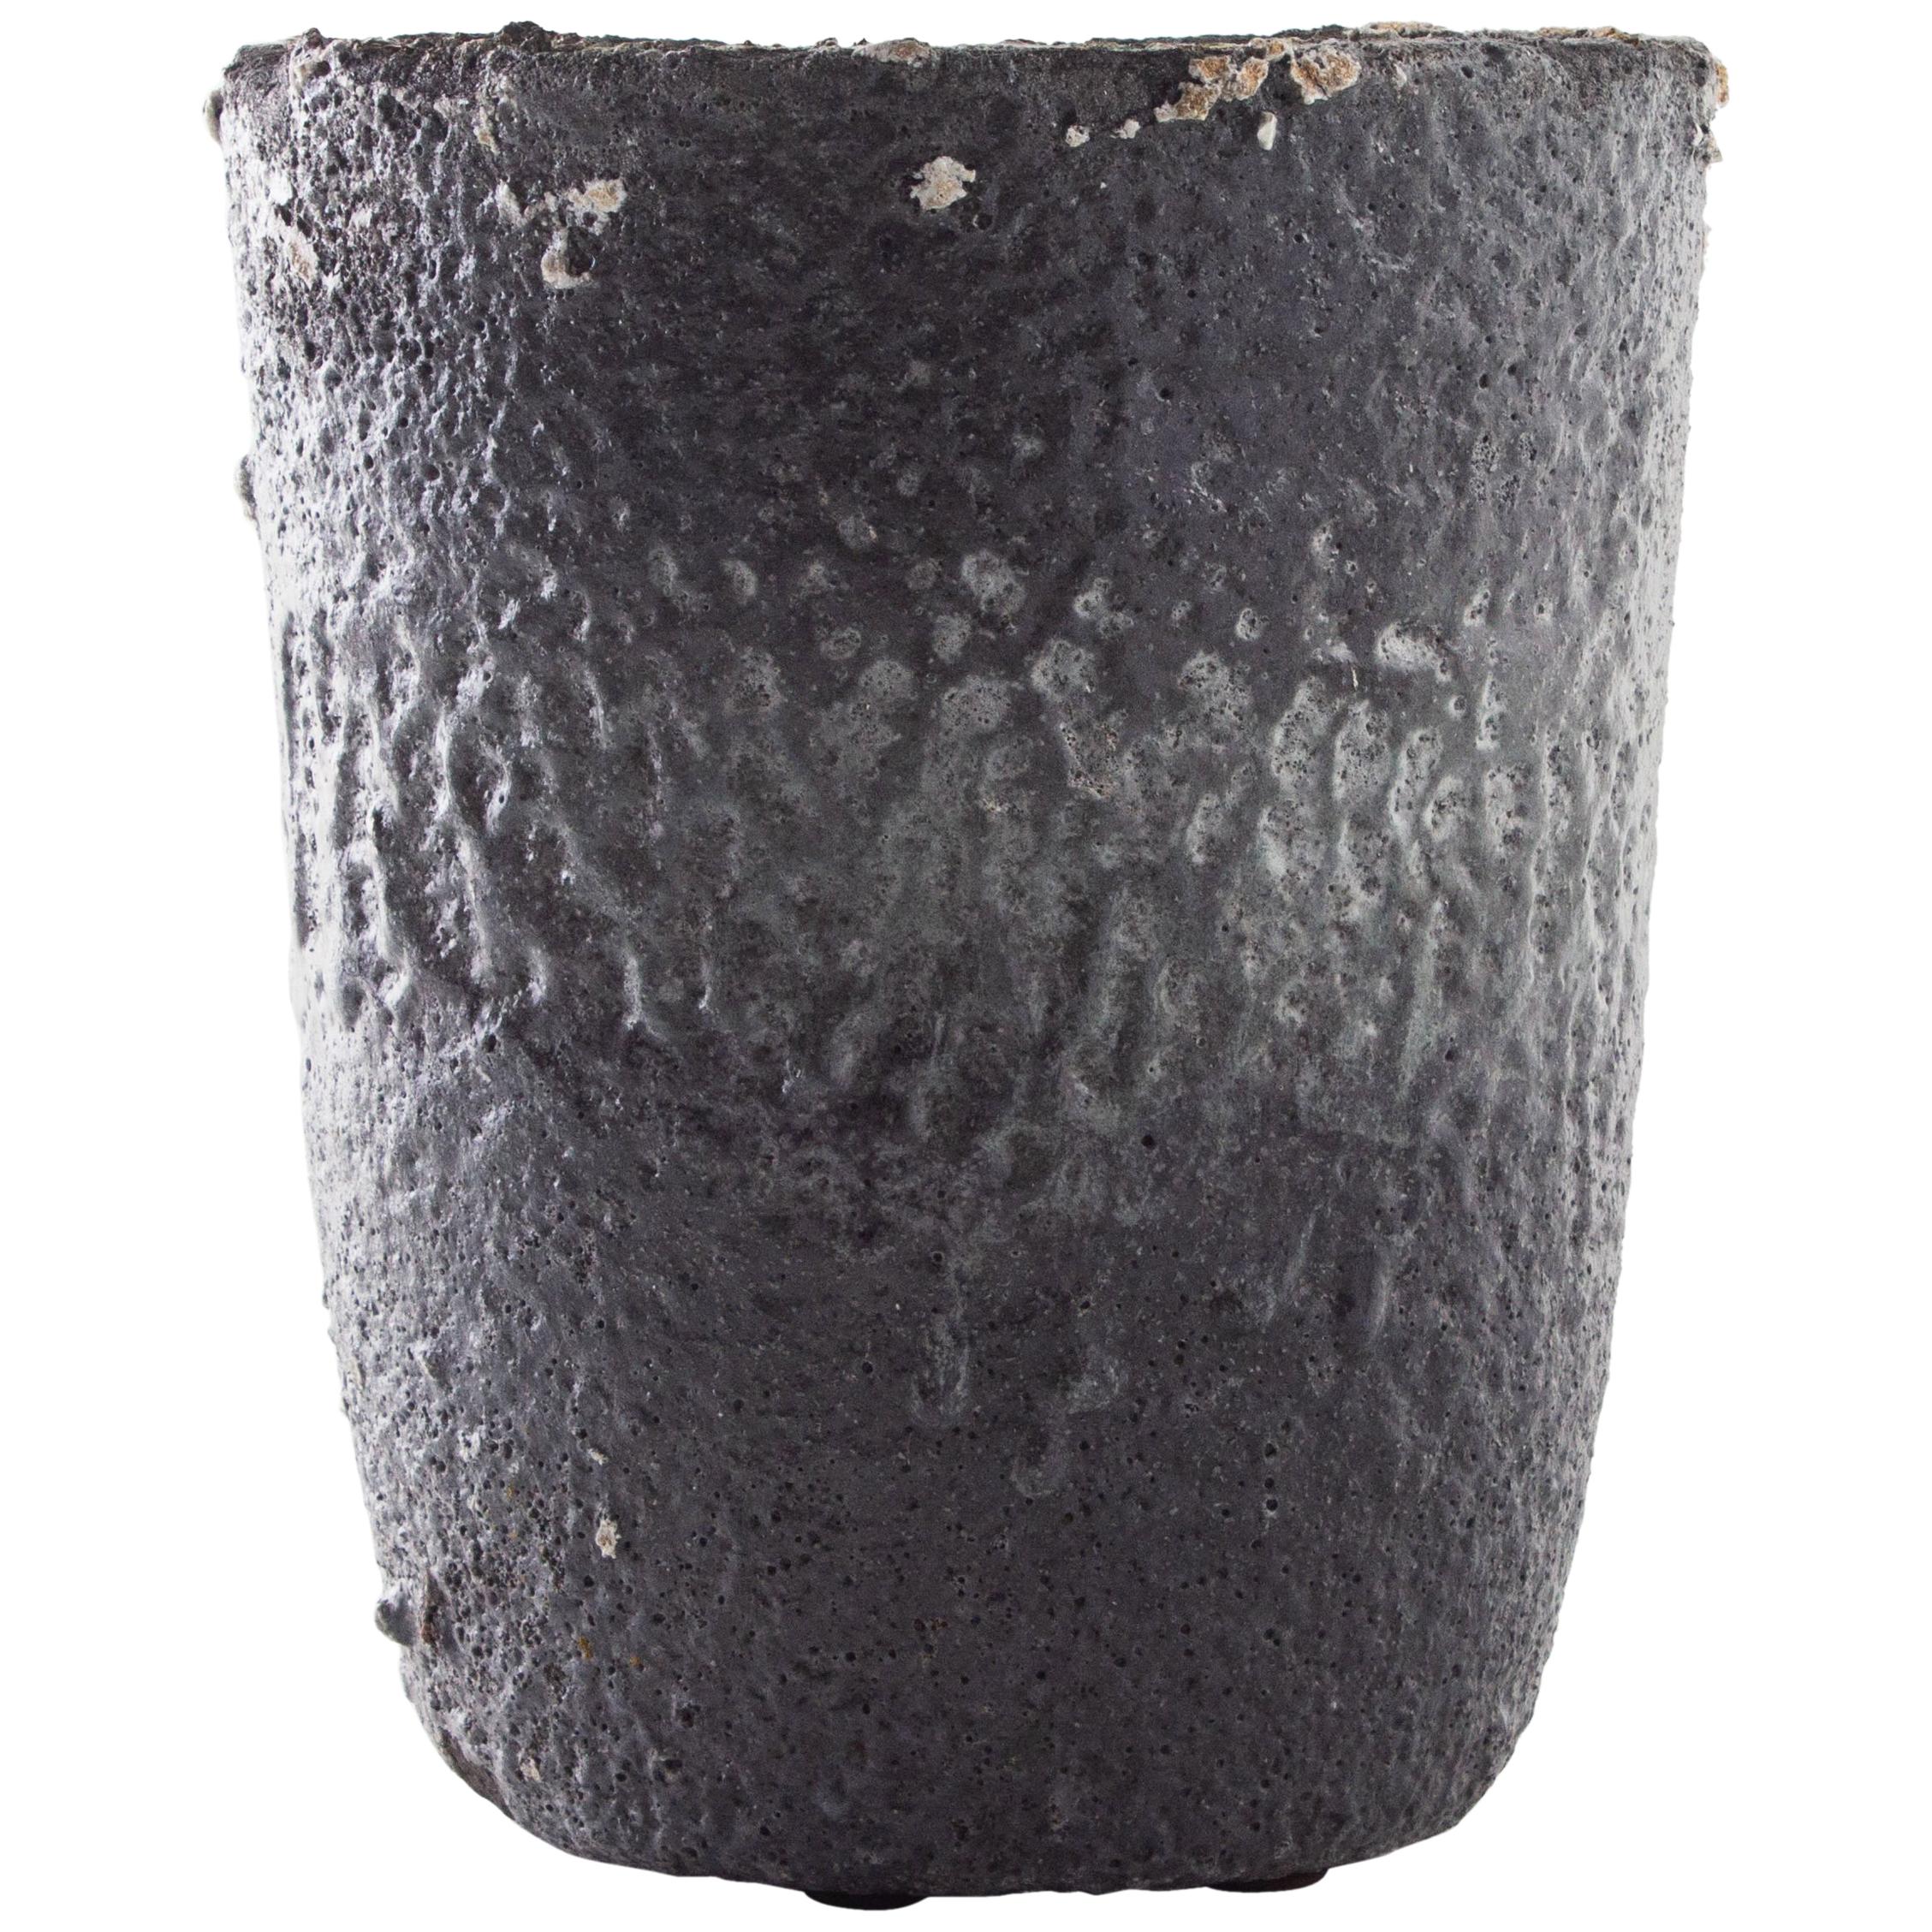 Vintage Smelting Pot